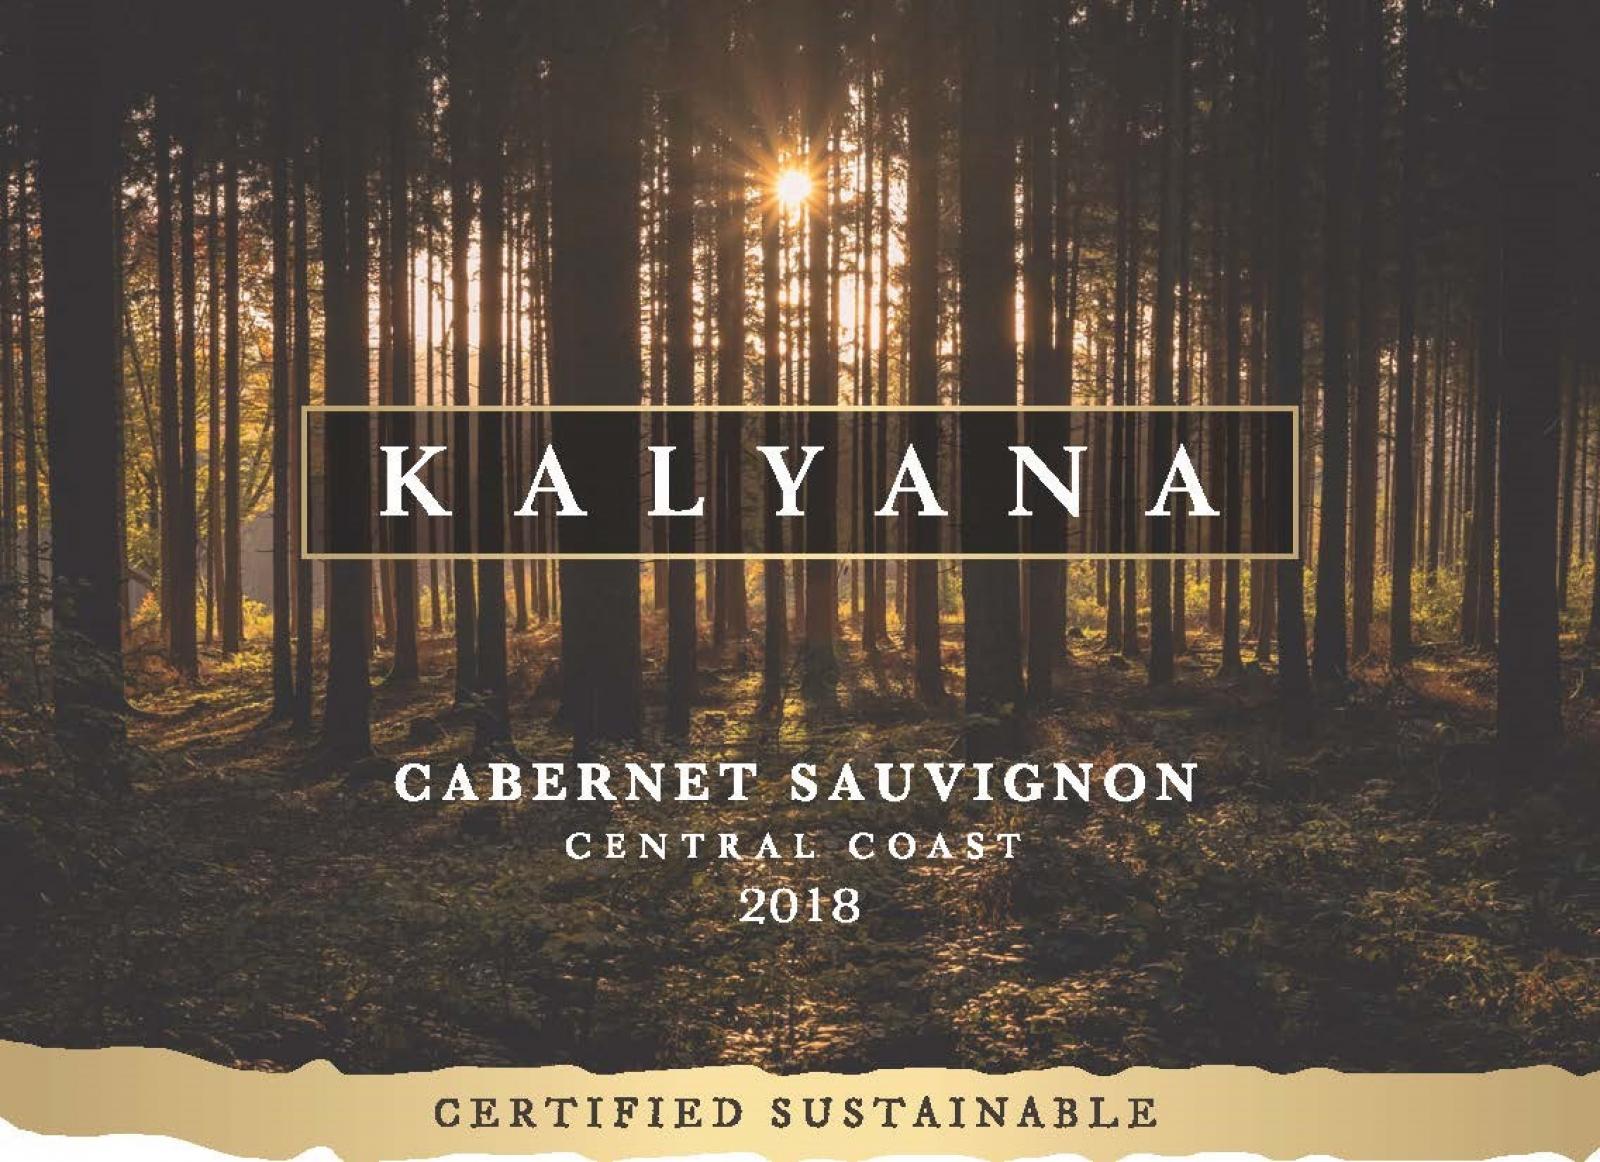 Kalyana Cabernet Sauvignon 2018